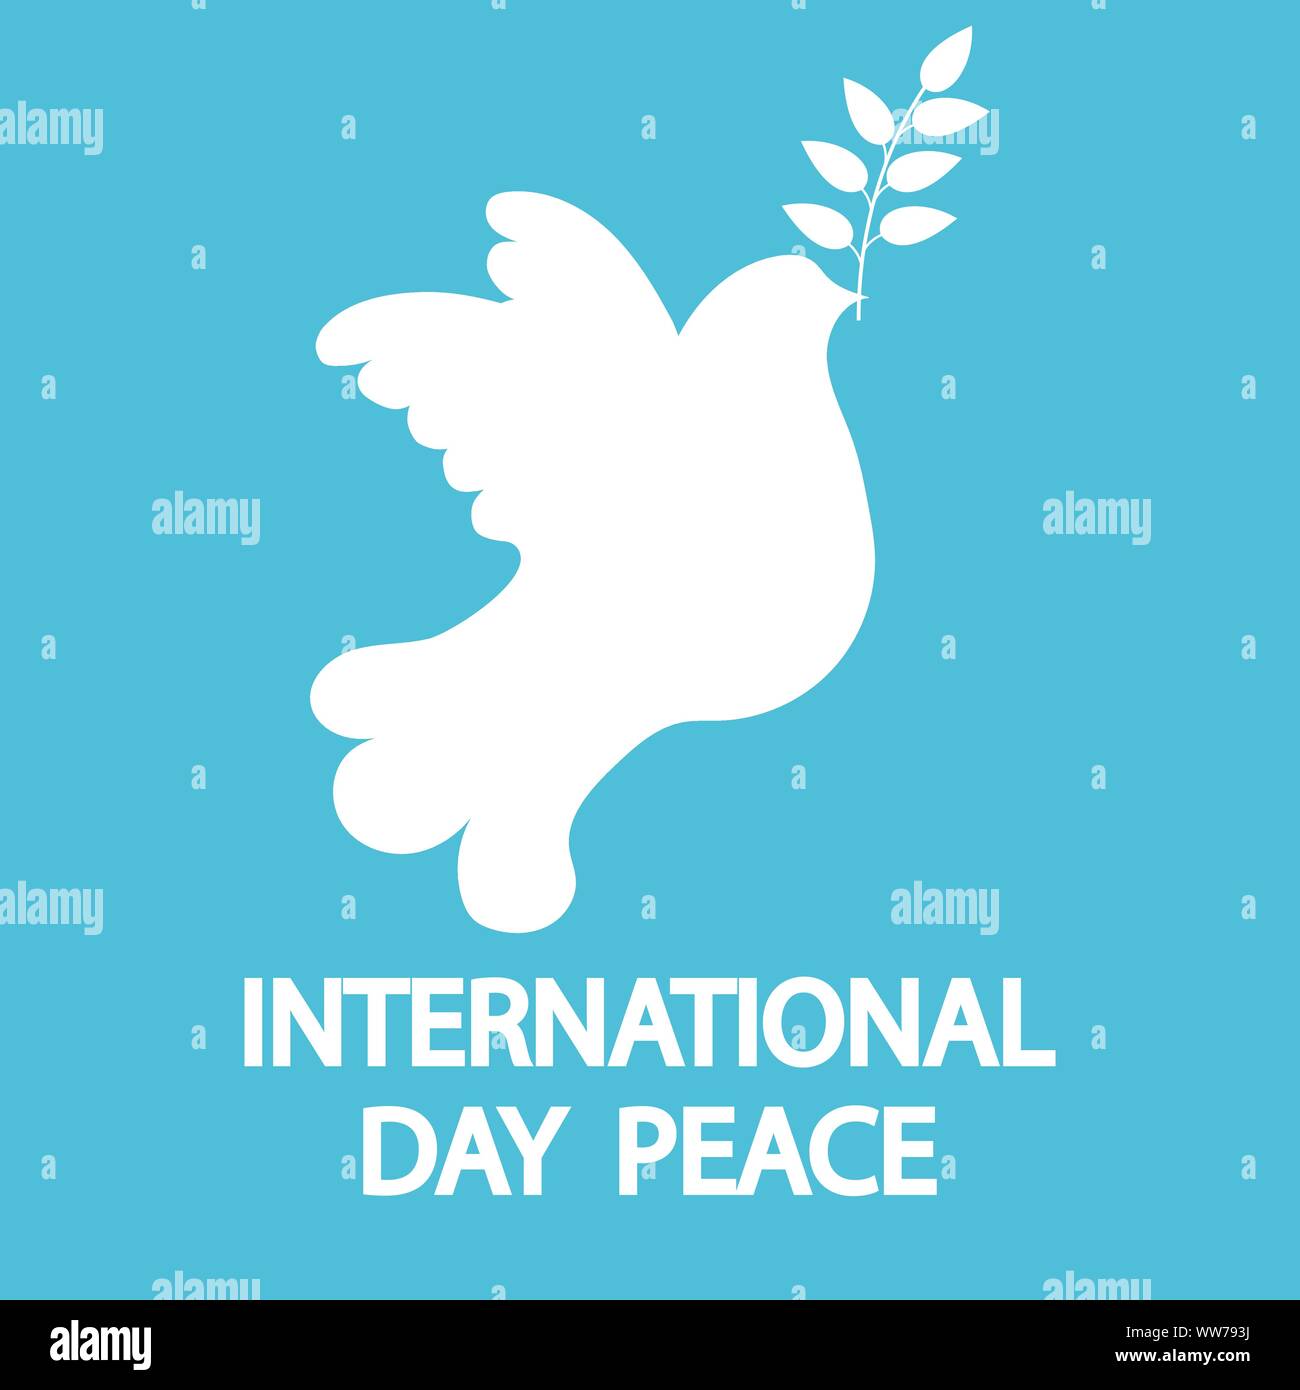 Colomba con il ramo di un albero per la pace internazionale giorni di vacanza Illustrazione Vettoriale